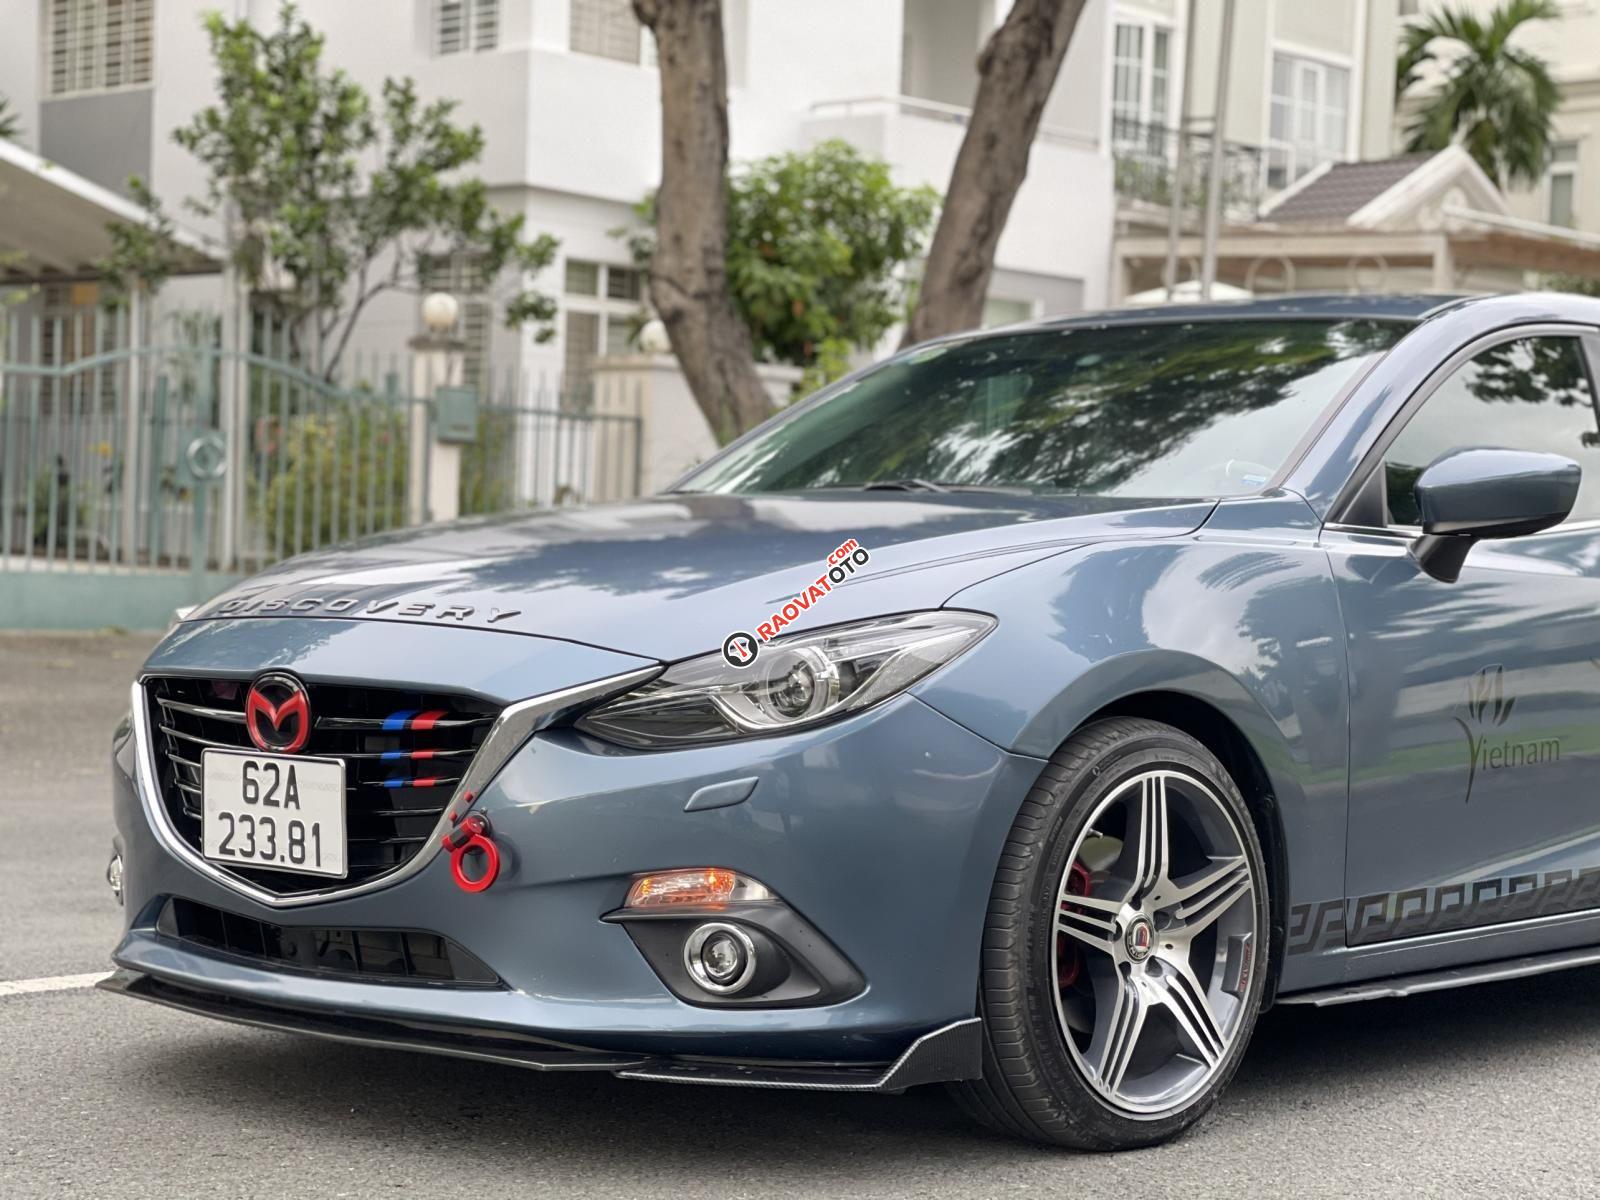 Cần bán lại chiếc Mazda 3 2.0 năm 2016, giá chỉ 539tr, hỗ trợ vay tới 70%-19